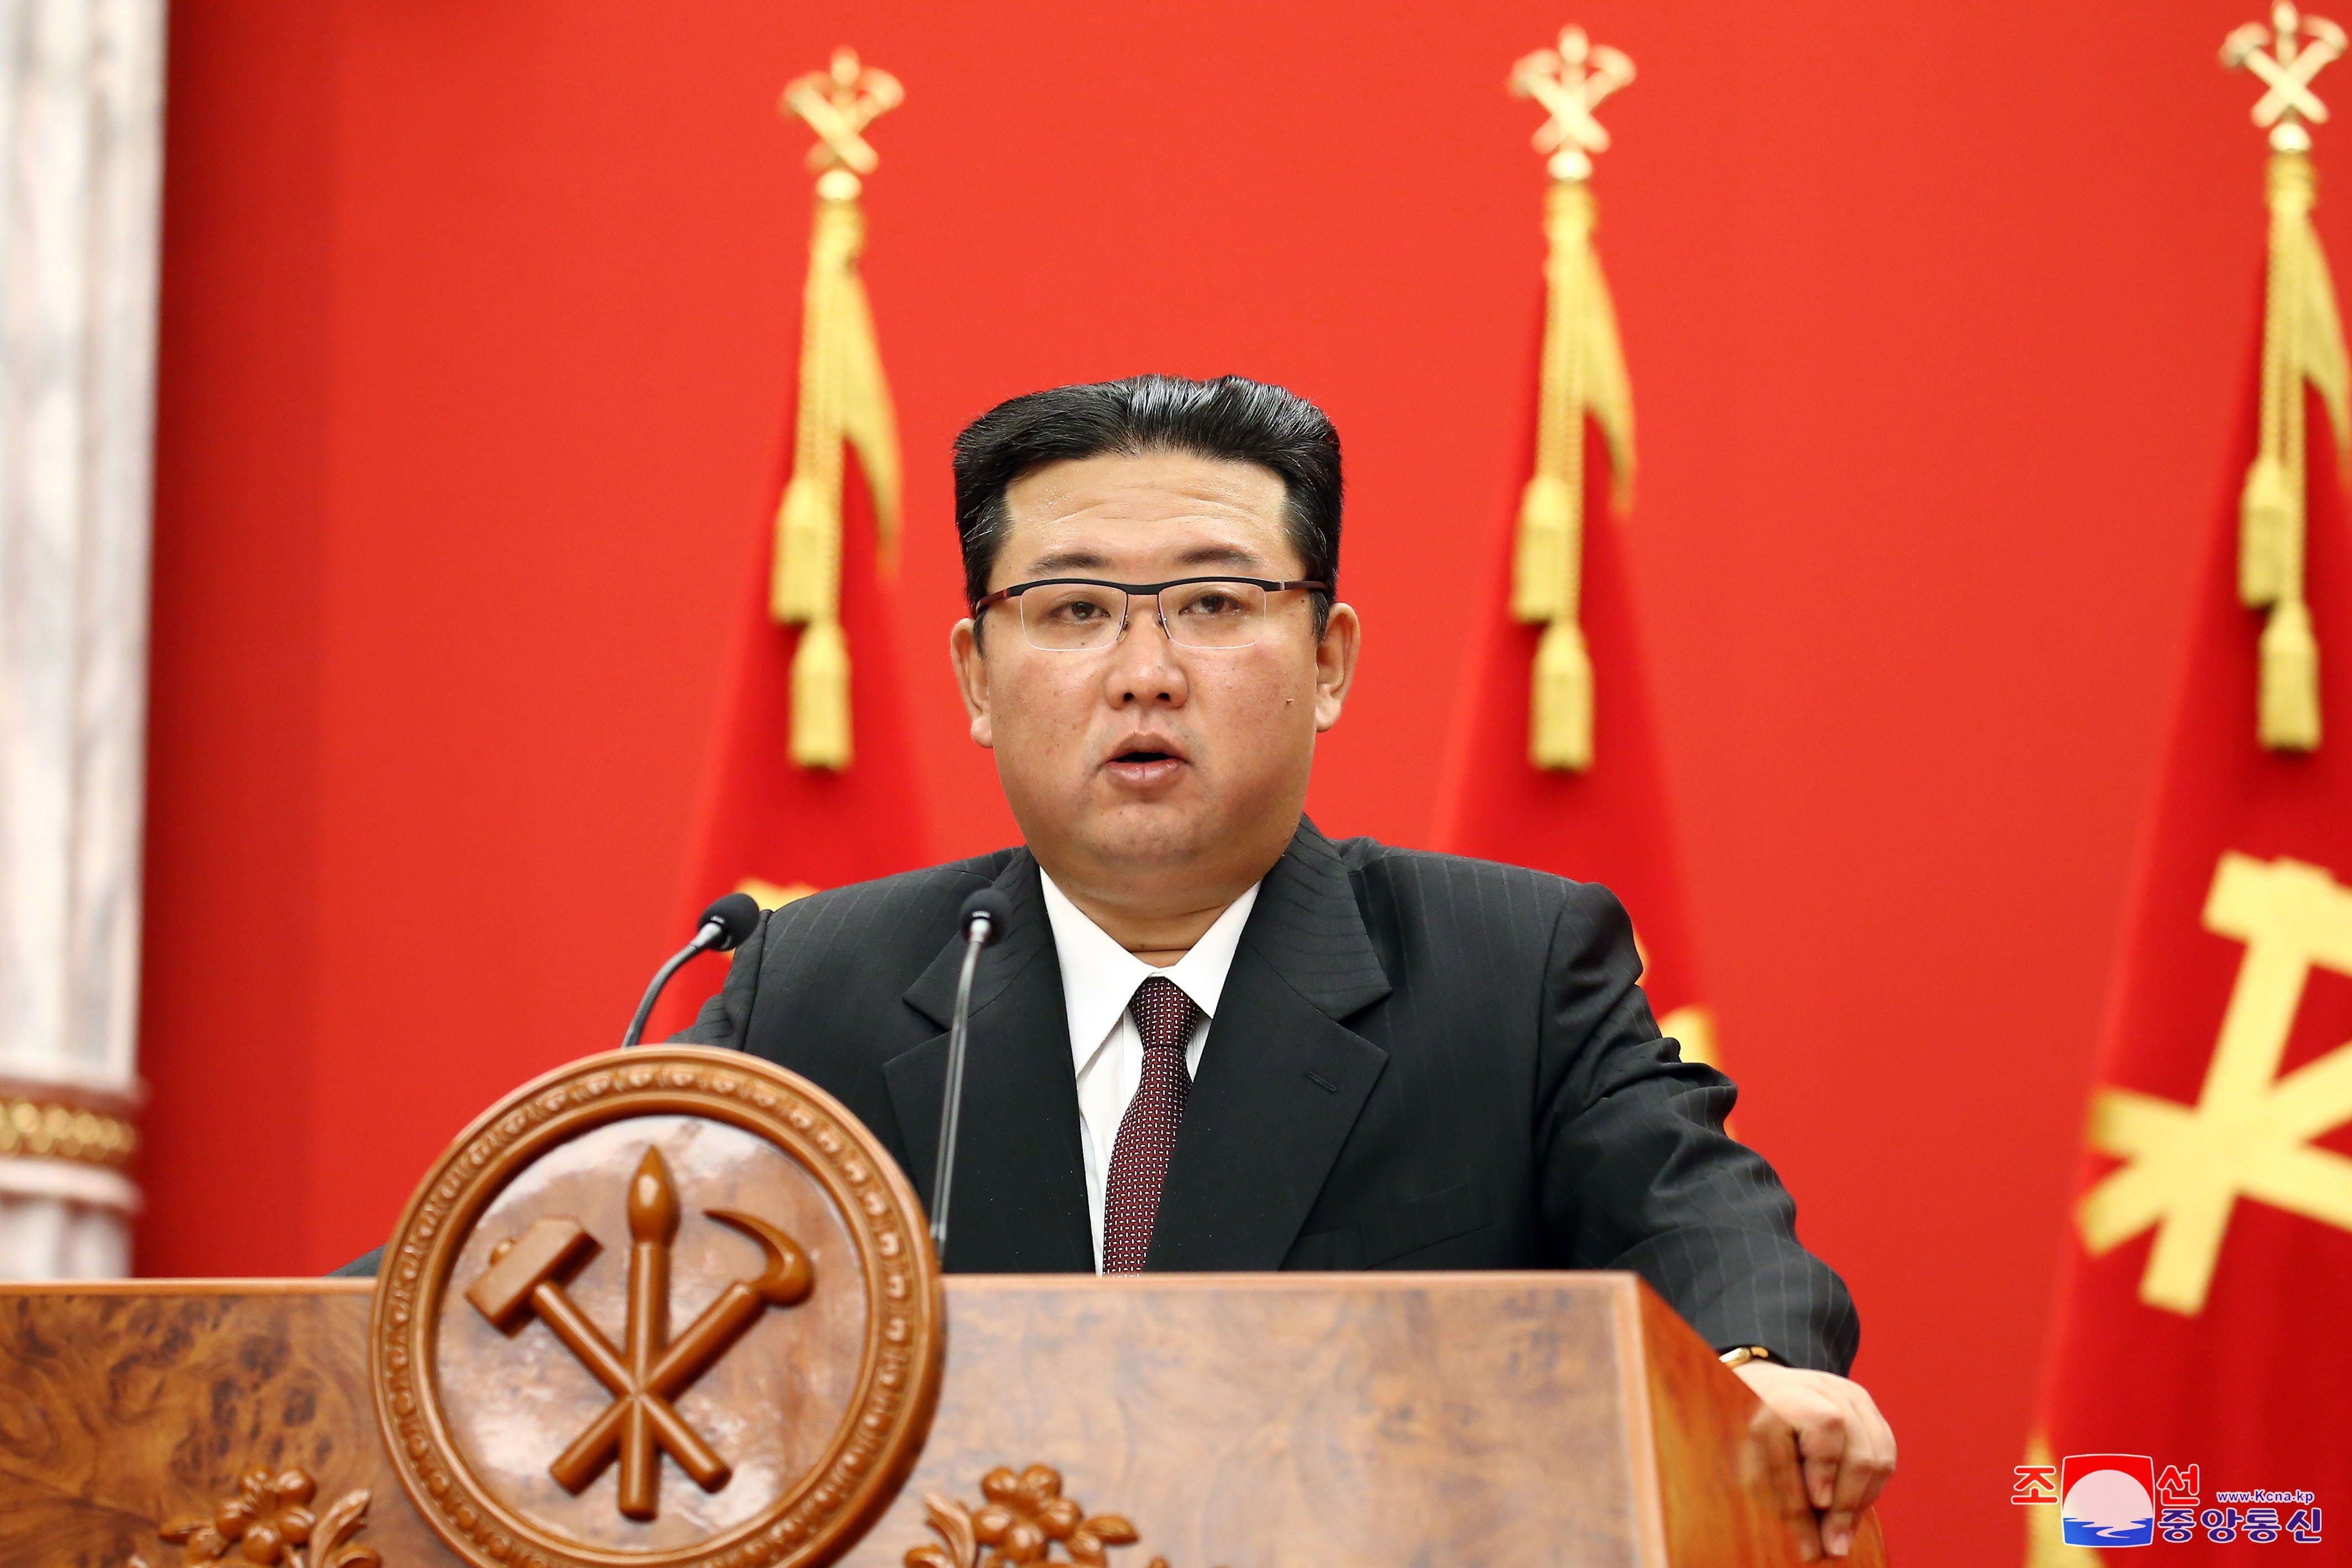 Foto publicada por la Agencia Central de Noticias de Corea del Norte (KCNA) muestra a Kim Jong-Un, secretario general del Partido de los Trabajadores de Corea, durante una conferencia conmemorativa organizada por el Comité Central del WPK, en Pyongyang, Corea del Norte. EFE/EPA/KCNA 